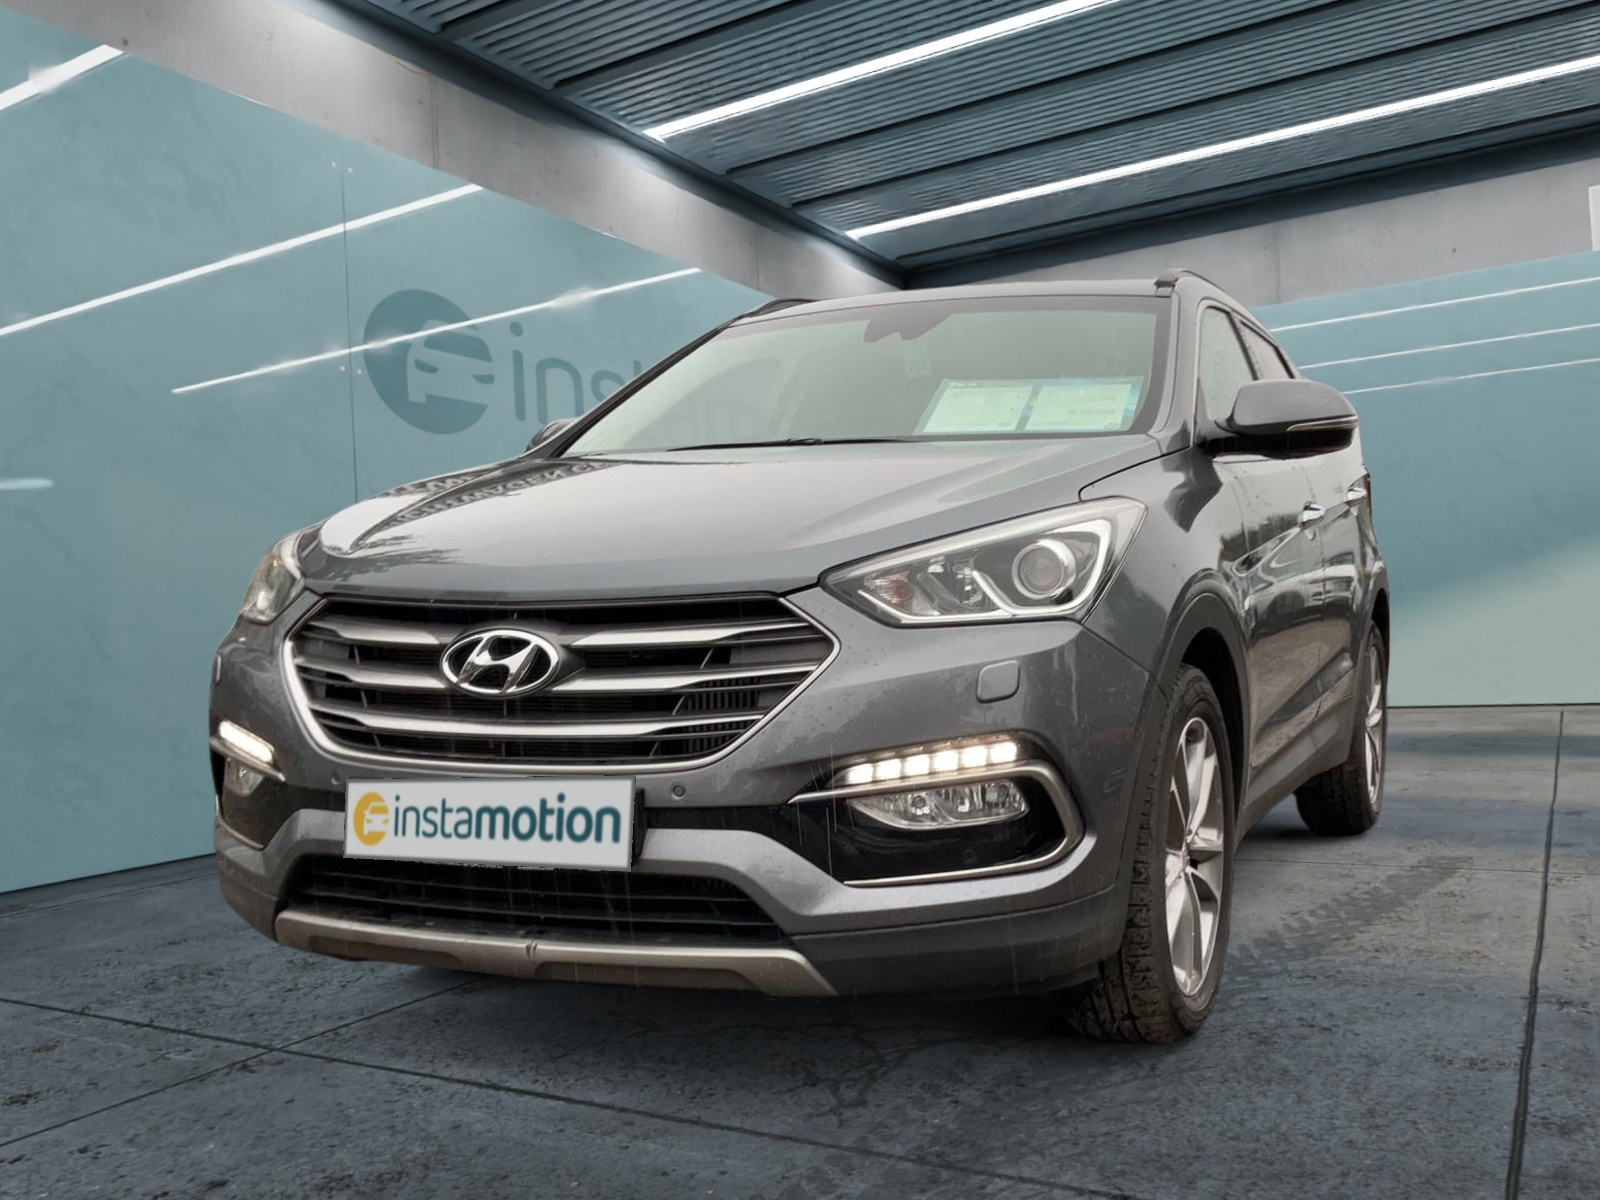 Hyundai Santa Fe Gebrauchtwagen online kaufen bei instamotion